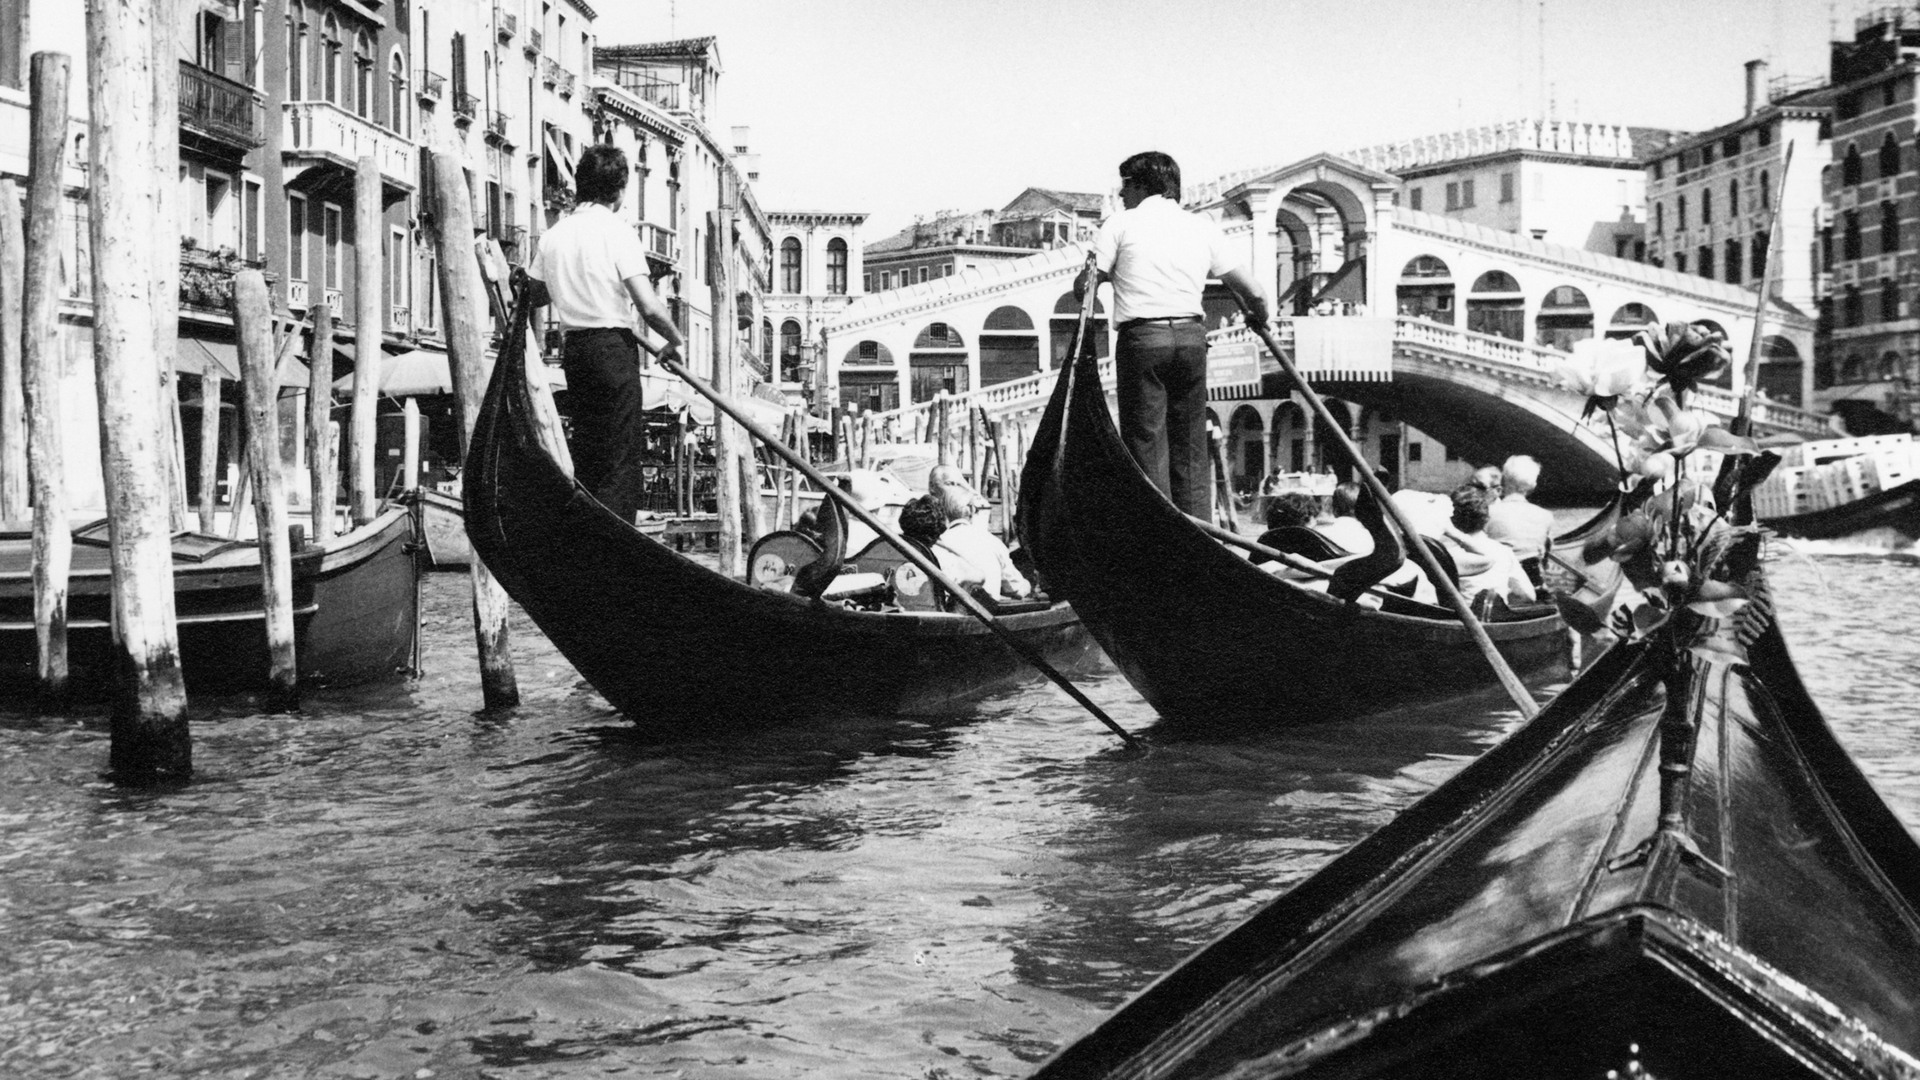 Två män står i aktern på varsin båt och paddlar längsmed en flod som kantas av en stadsmiljö. I båtarna sitter ett par stycken människor.